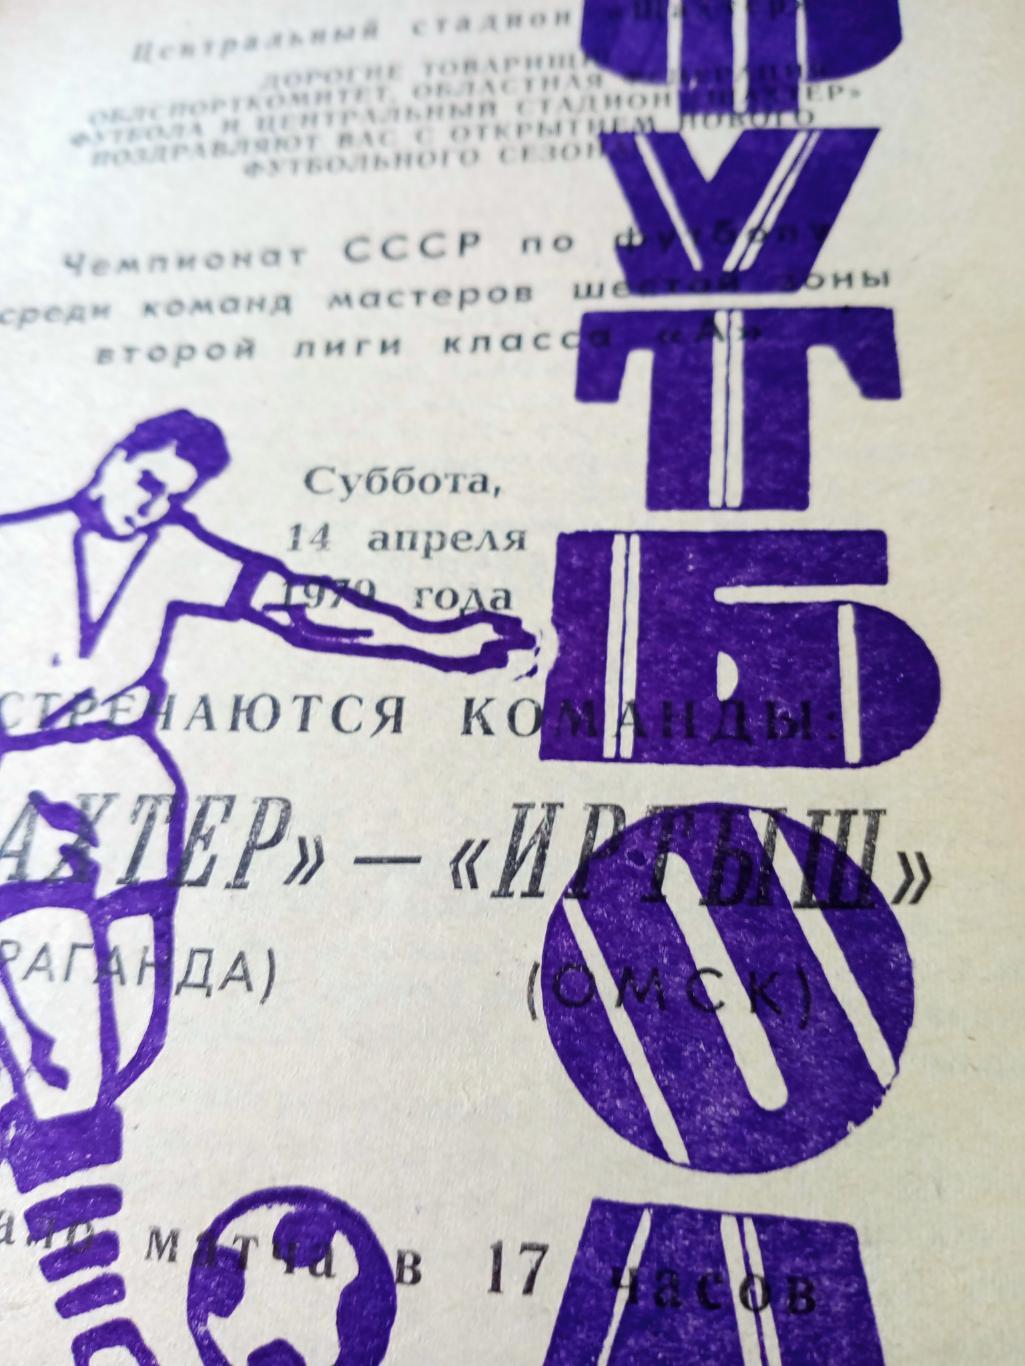 Шахтер Караганда - Иртыш Омск. 14 апреля 1979 год